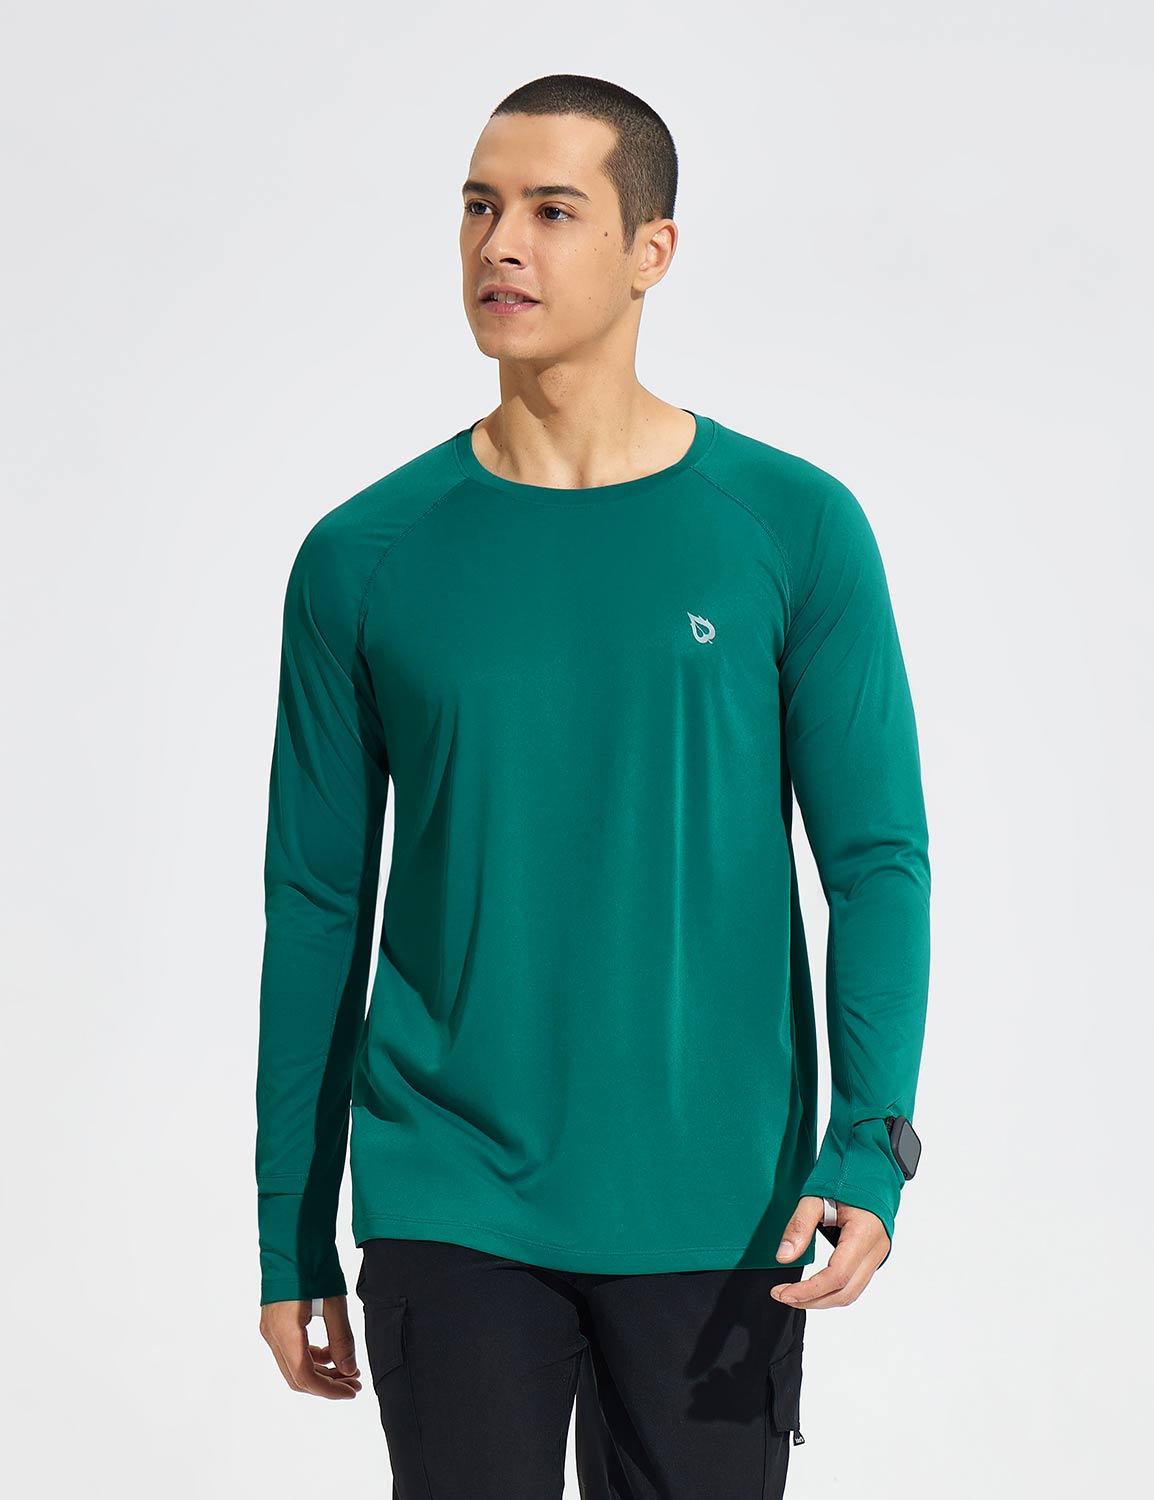 Baleaf Men‘s Quick-dry UPF 50+ Zipper Pocket Shirt Teal Green Main